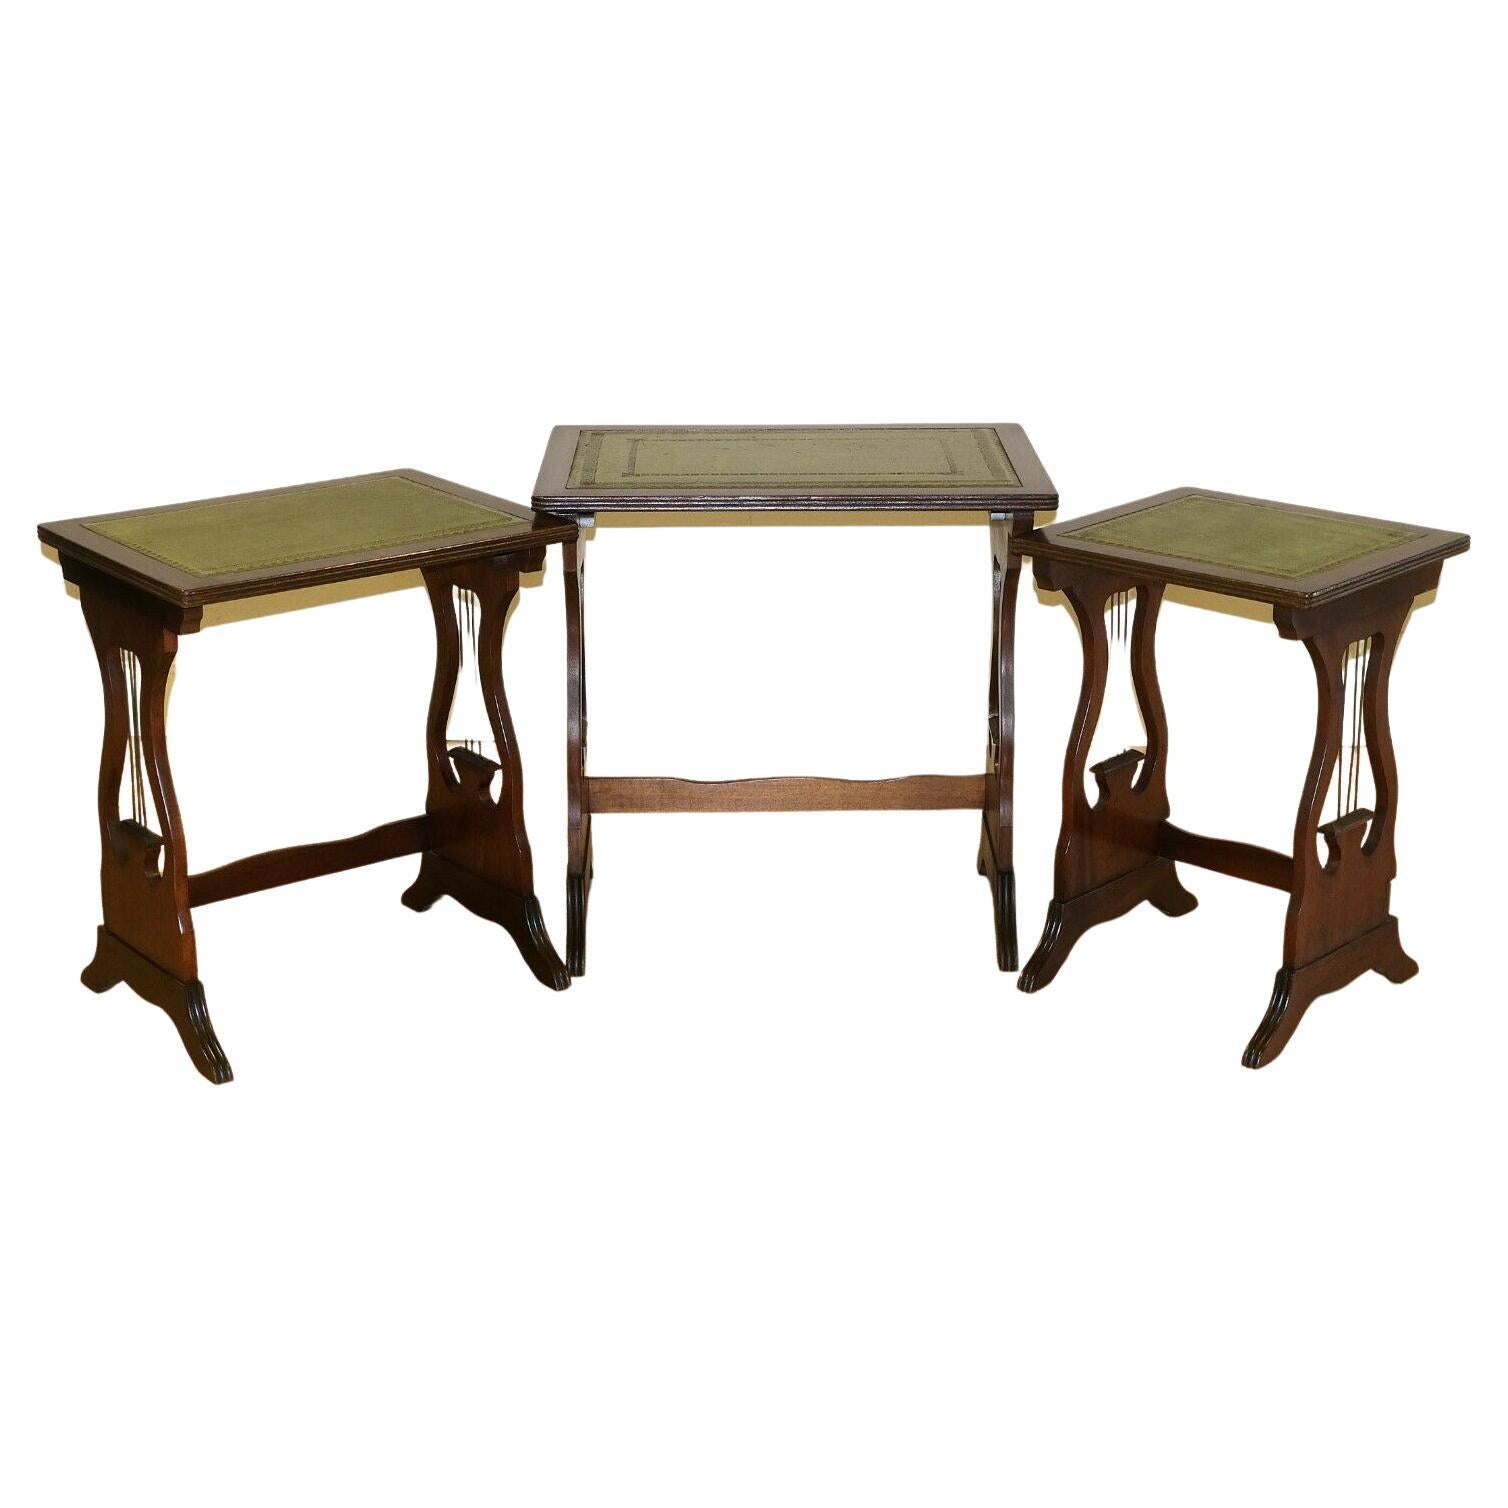 Wir freuen uns, zum Verkauf dieser schönen Mahagoni-Nest von Tischen grünen Lederplatte Tische bieten. 

Diese gut aussehenden und gut gemachten Tische stehen auf eleganten harfenförmigen Stützen, was sie sehr dekorativ macht und Ihnen aus jedem